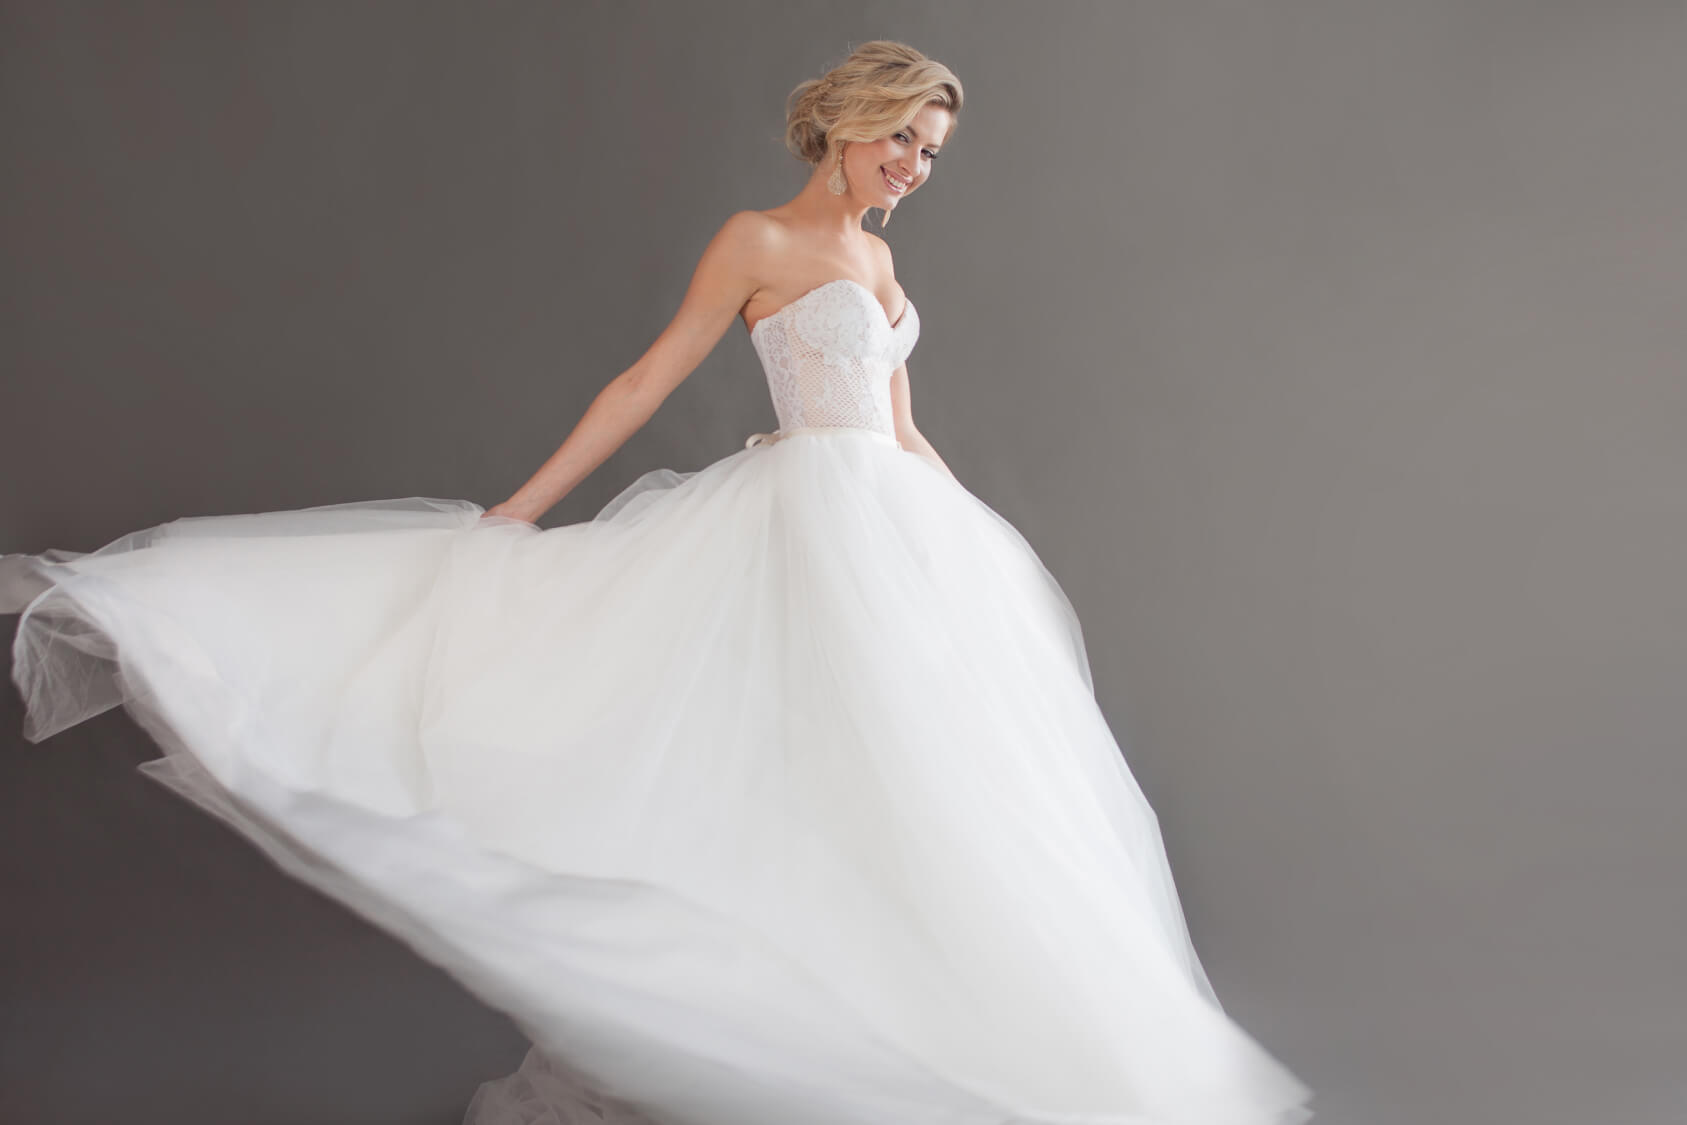 Летние свадебные платья, варианты моделей и наиболее подходящие ткани